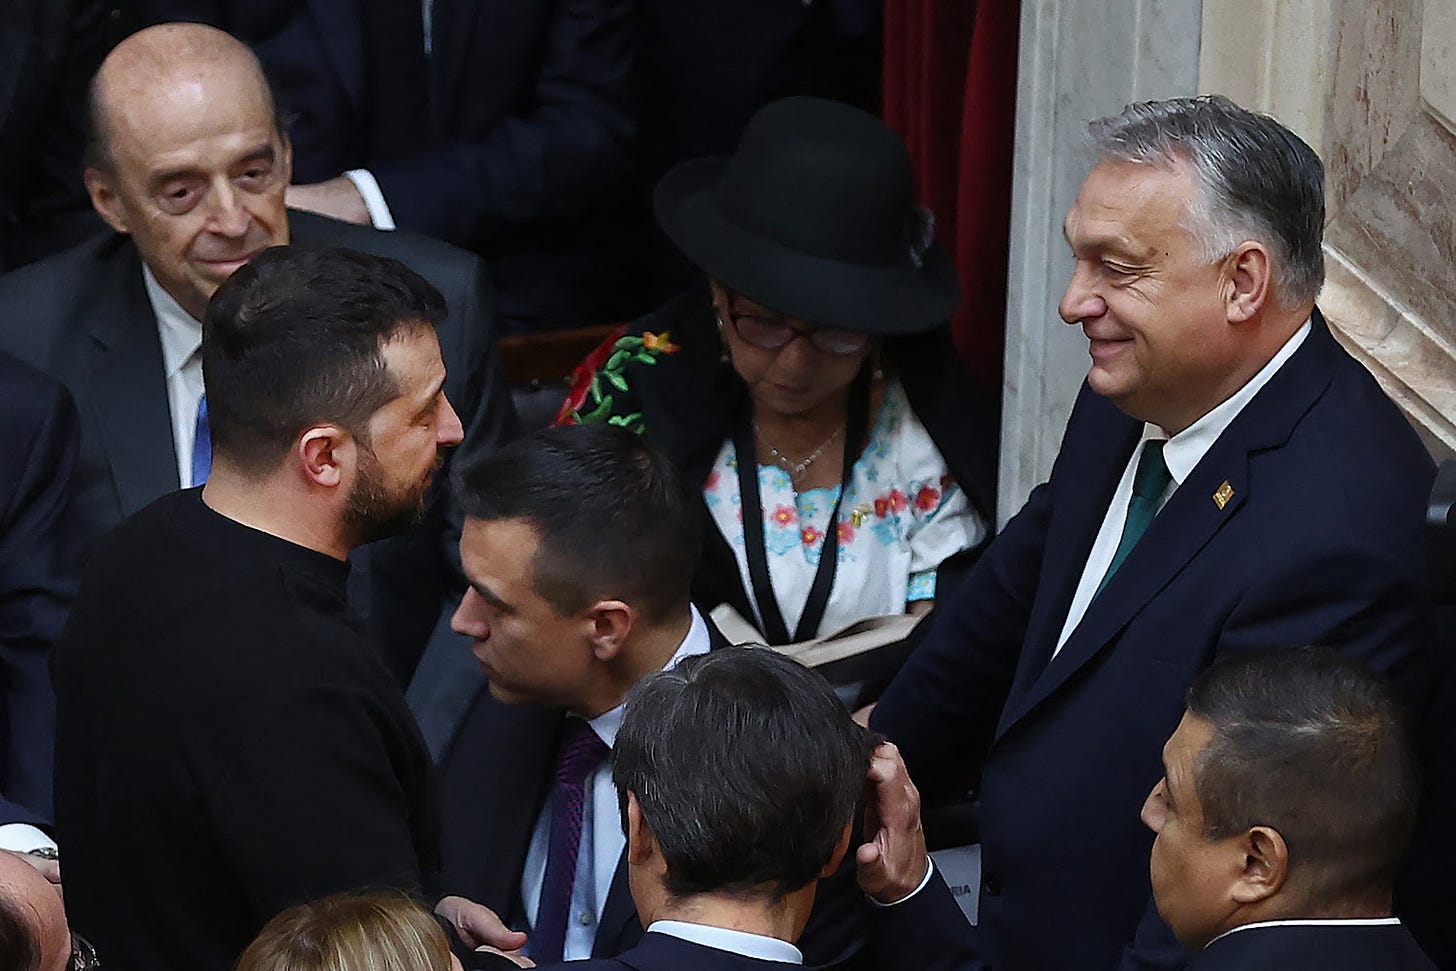 Ukrainian President Volodymyr Zelensky chats with Hungarian Prime Minister Viktor Orban.